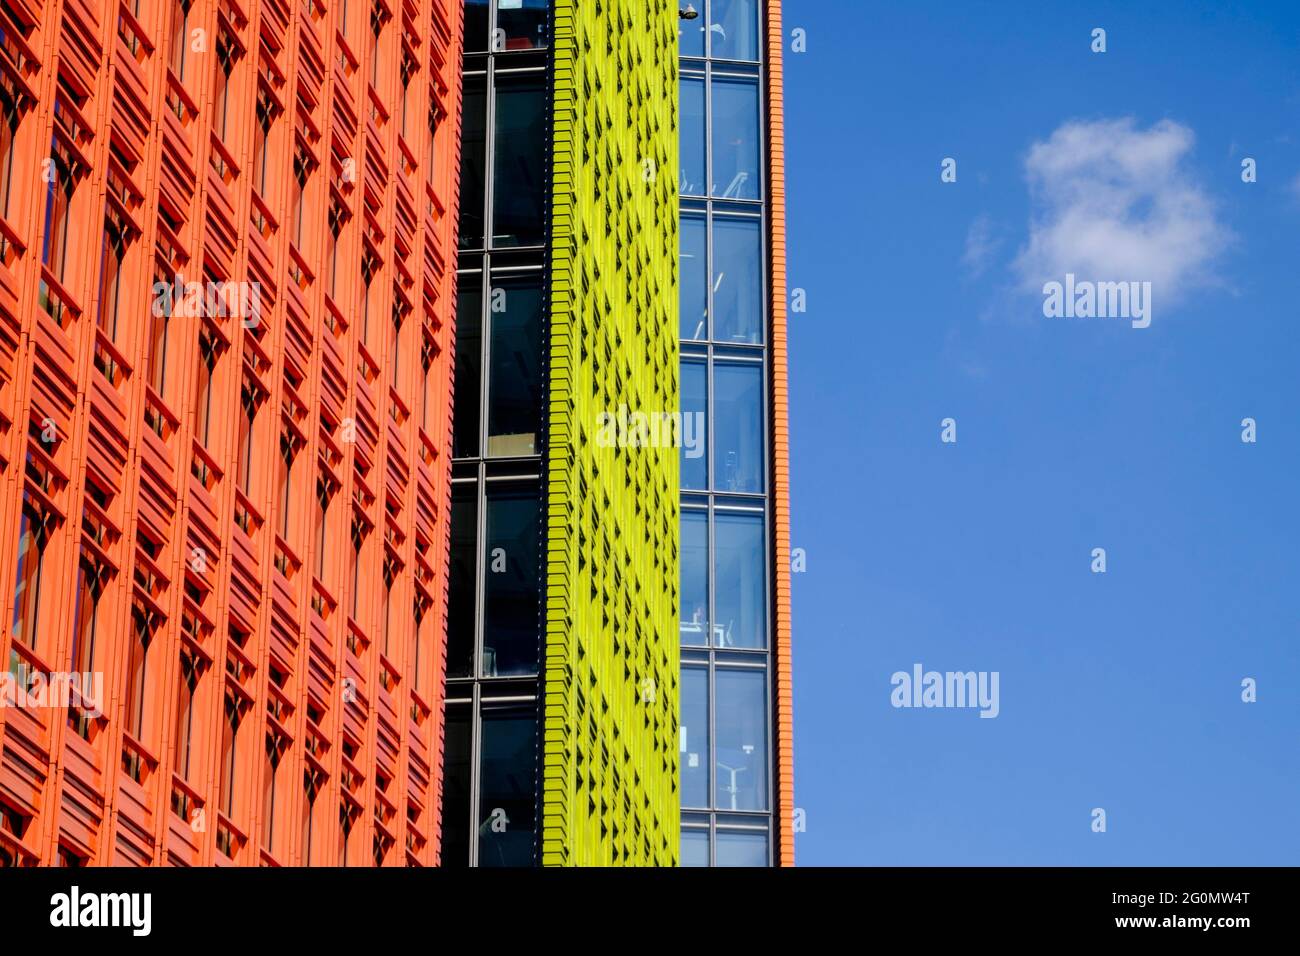 Sviluppo centrale di Saint Giles, architettura contemporanea, progettata dall'architetto italiano Renzo piano, Londra, Regno Unito Foto Stock